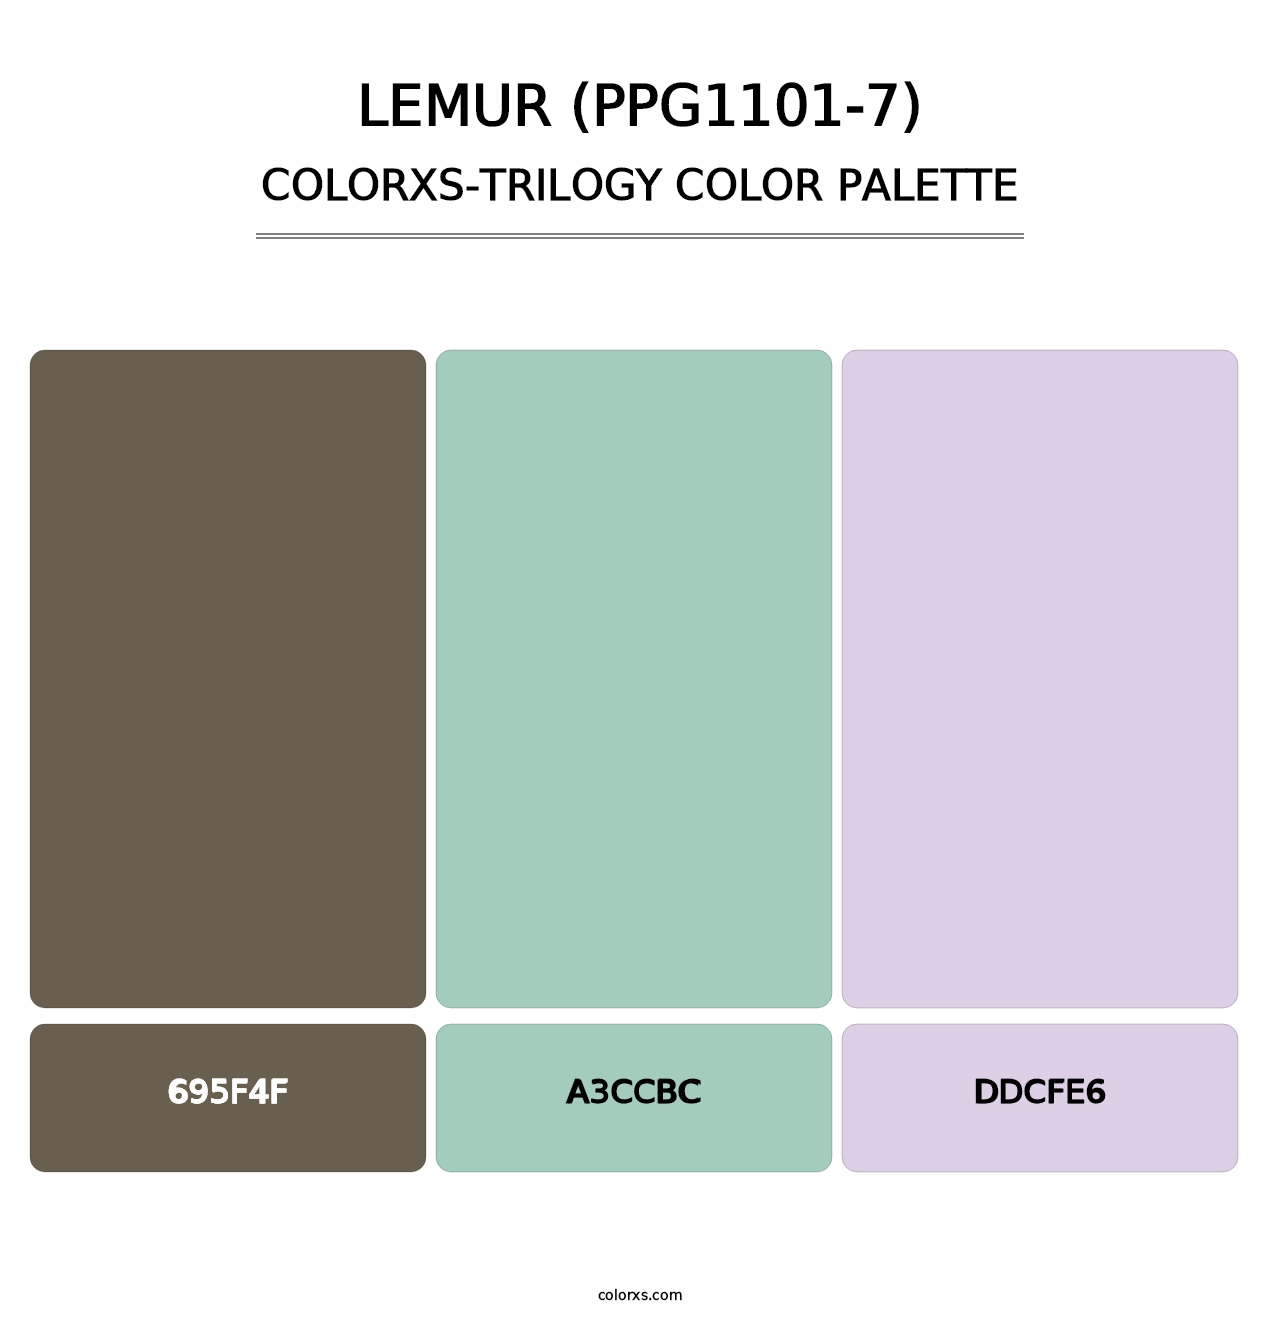 Lemur (PPG1101-7) - Colorxs Trilogy Palette